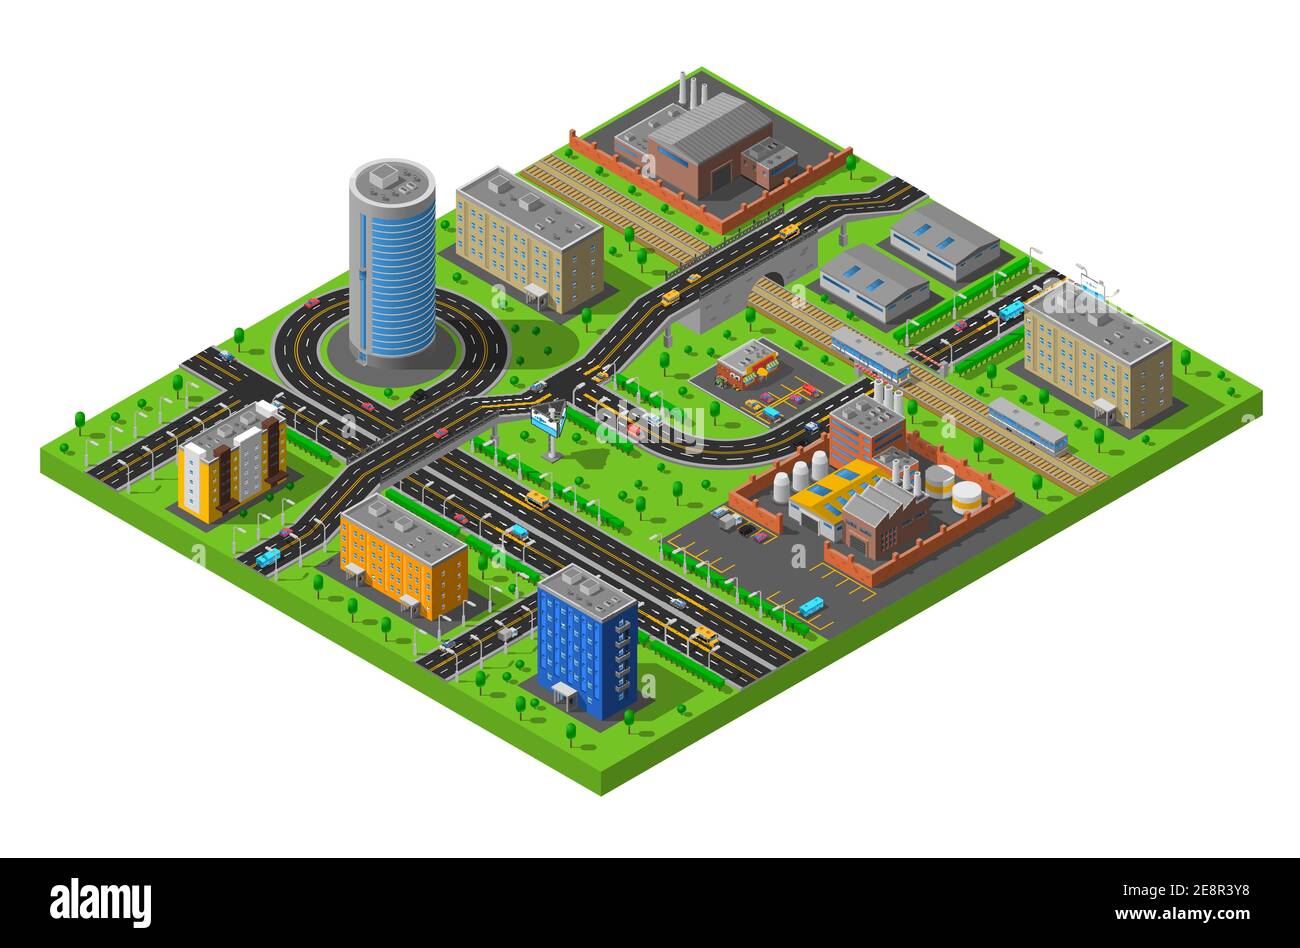 Elementi del distretto urbano industriale e residenziale composizione isometrica poster con strade e impianti di produzione illustrazione vettoriale astratta Illustrazione Vettoriale